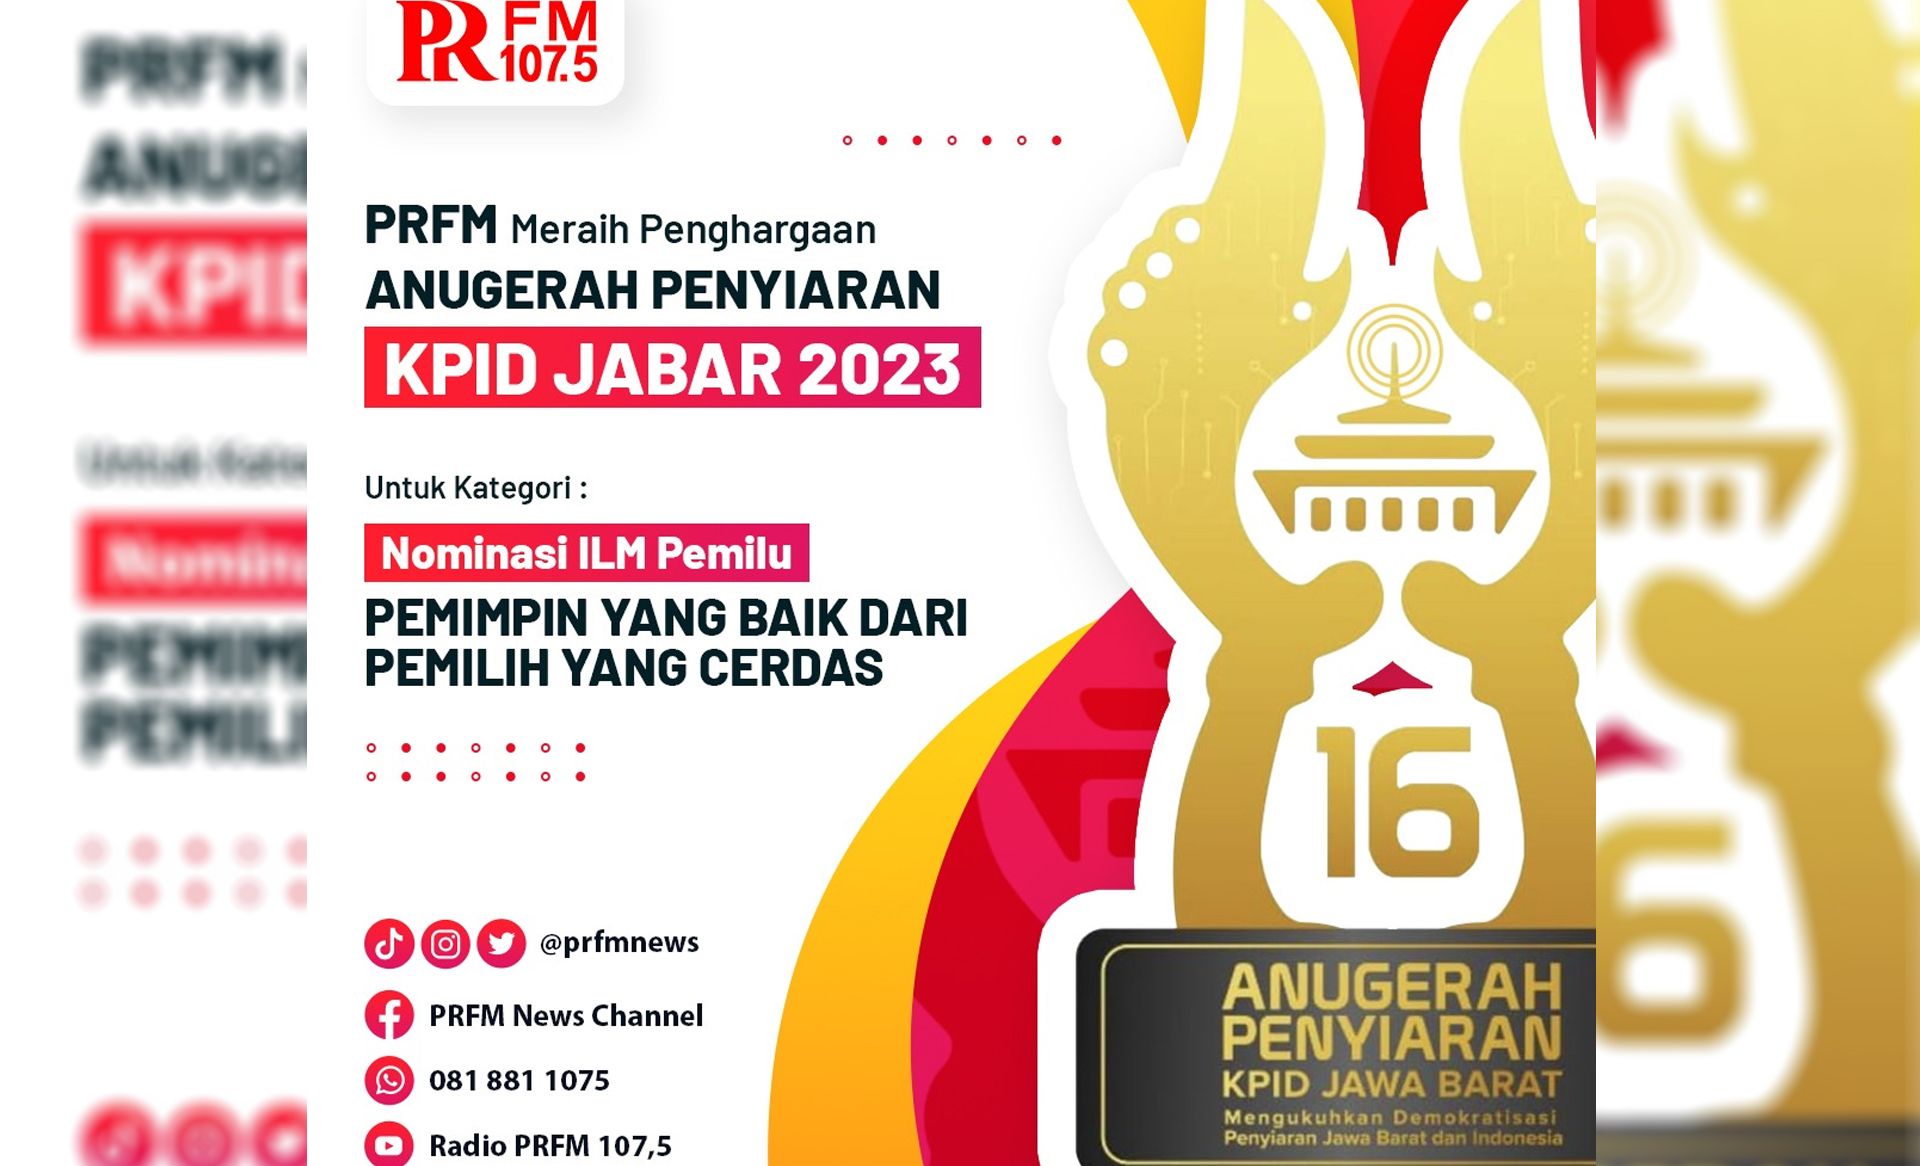 PRFM raih penghargaan Anugerah Penyiaran KPID Jabar 2023 Nominasi ILM Pemilu